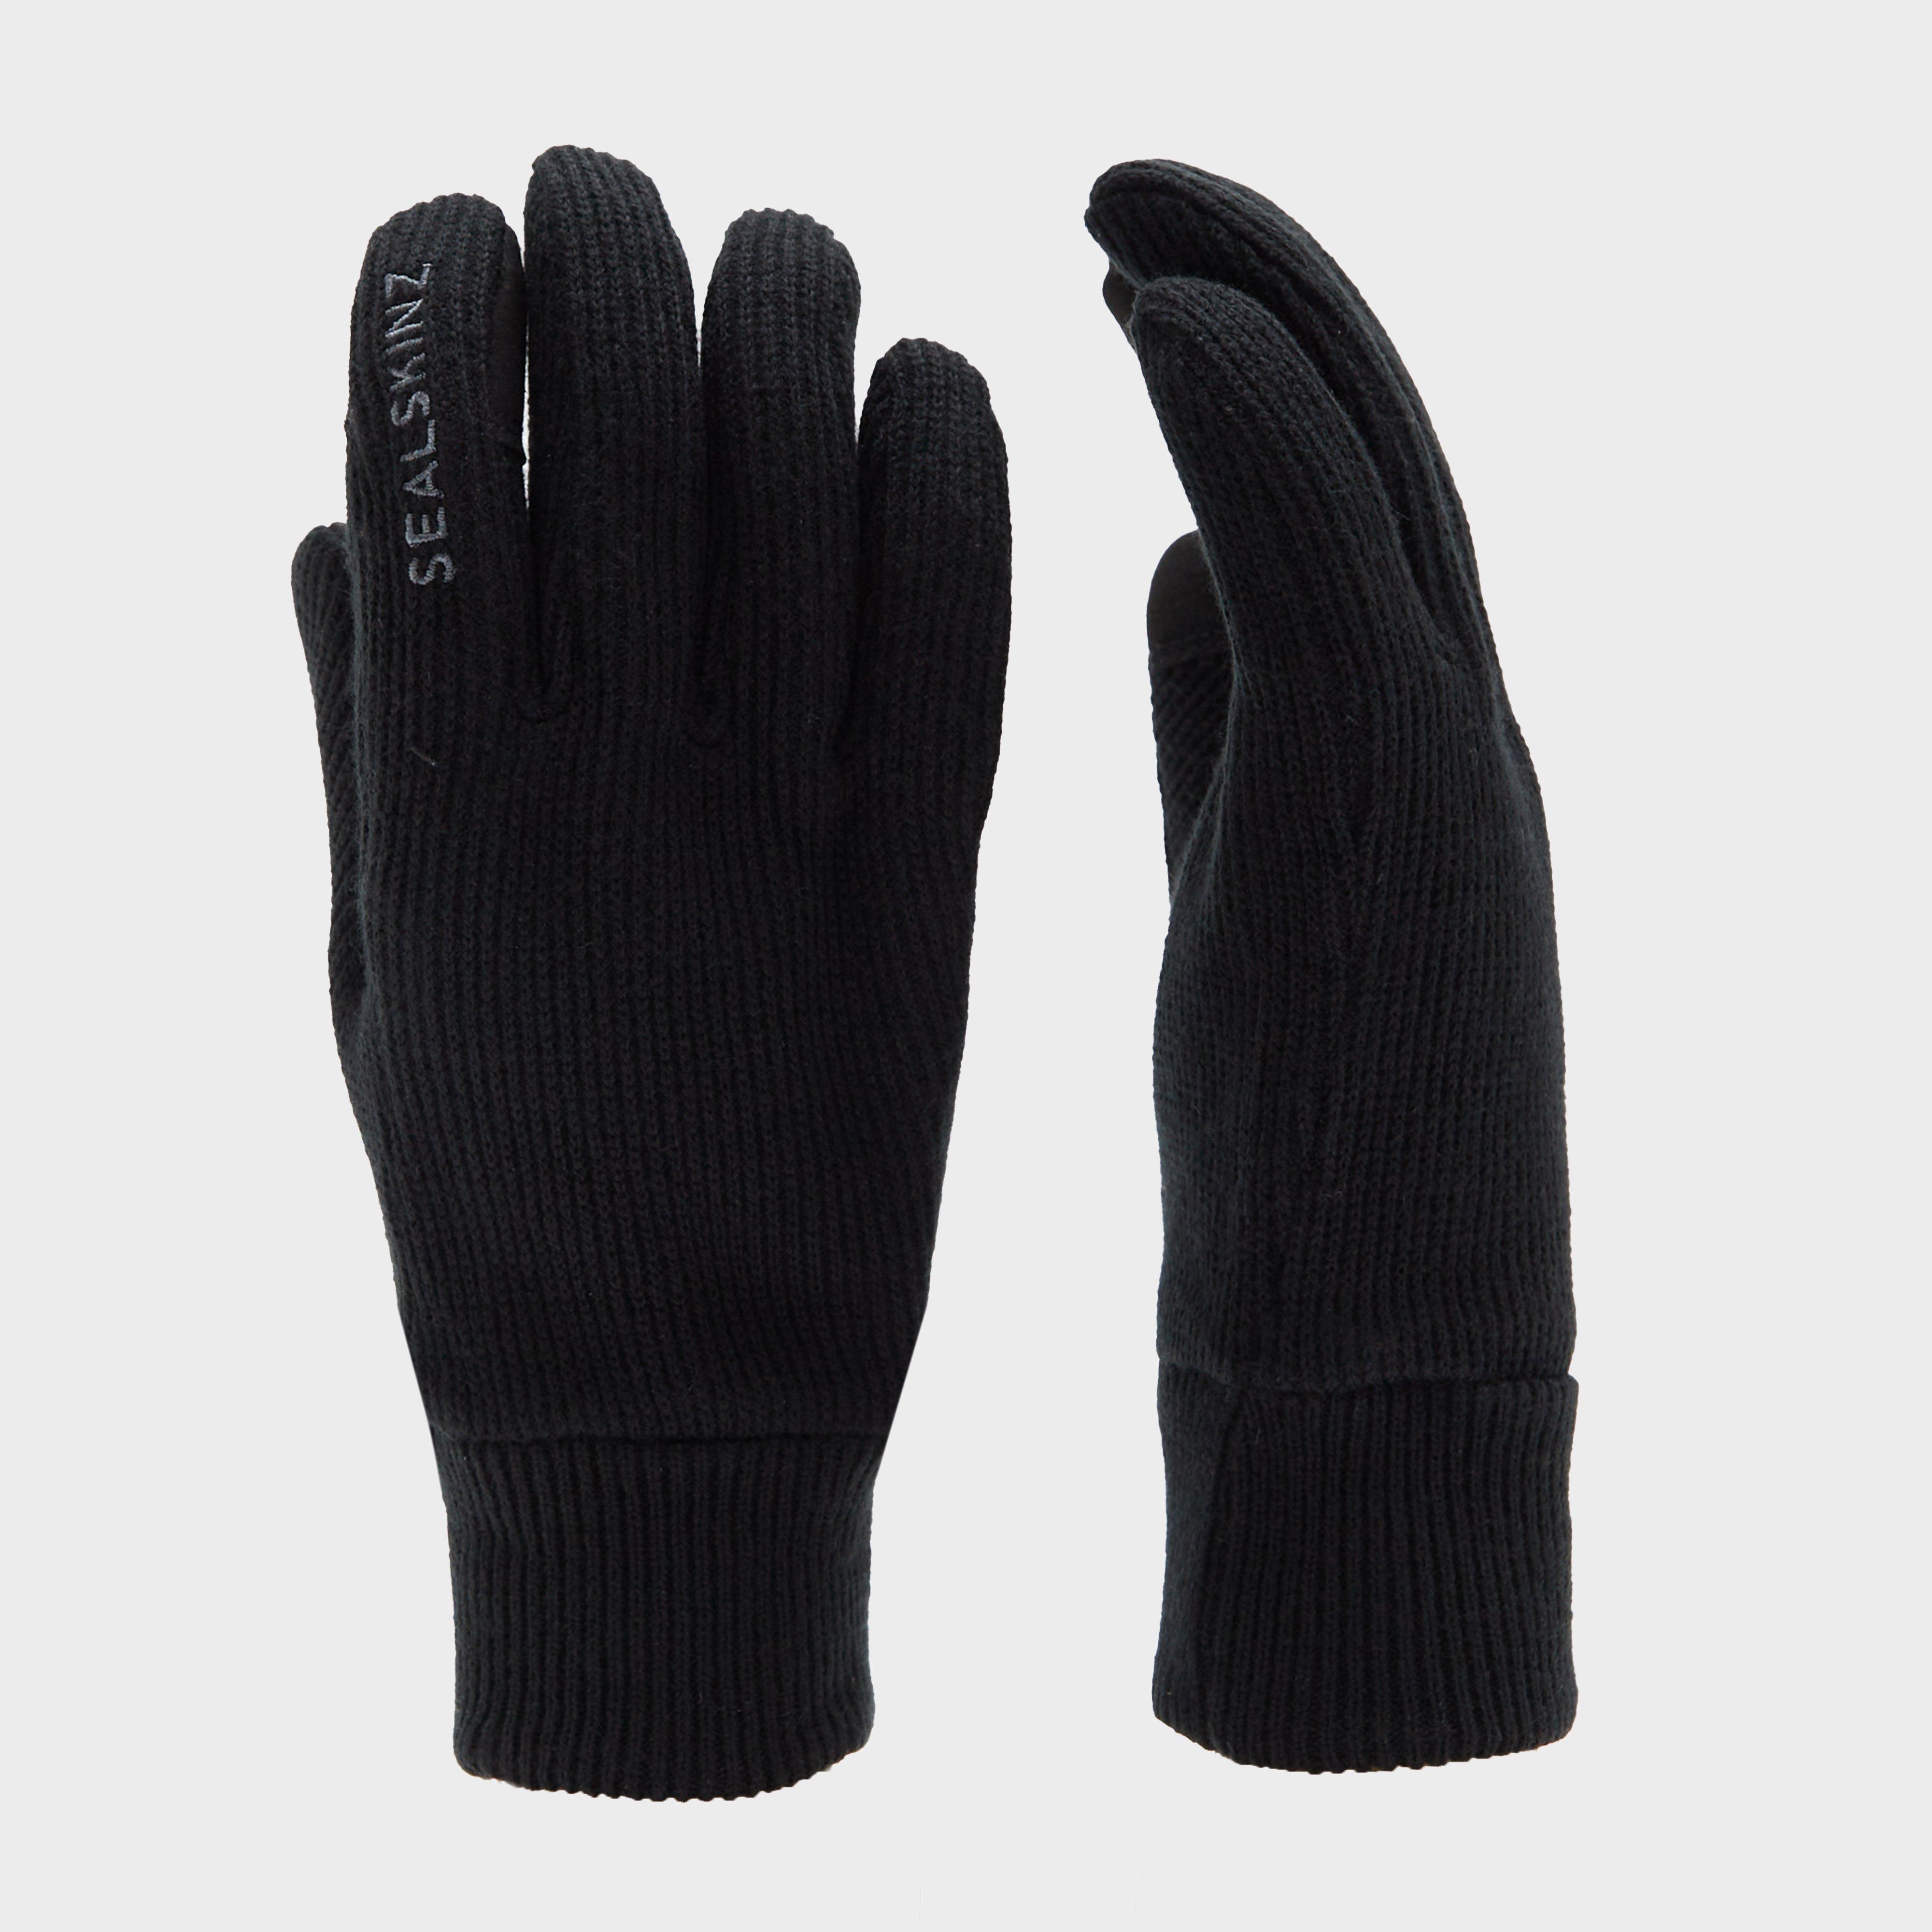 Unisex Necton Gloves - Black product